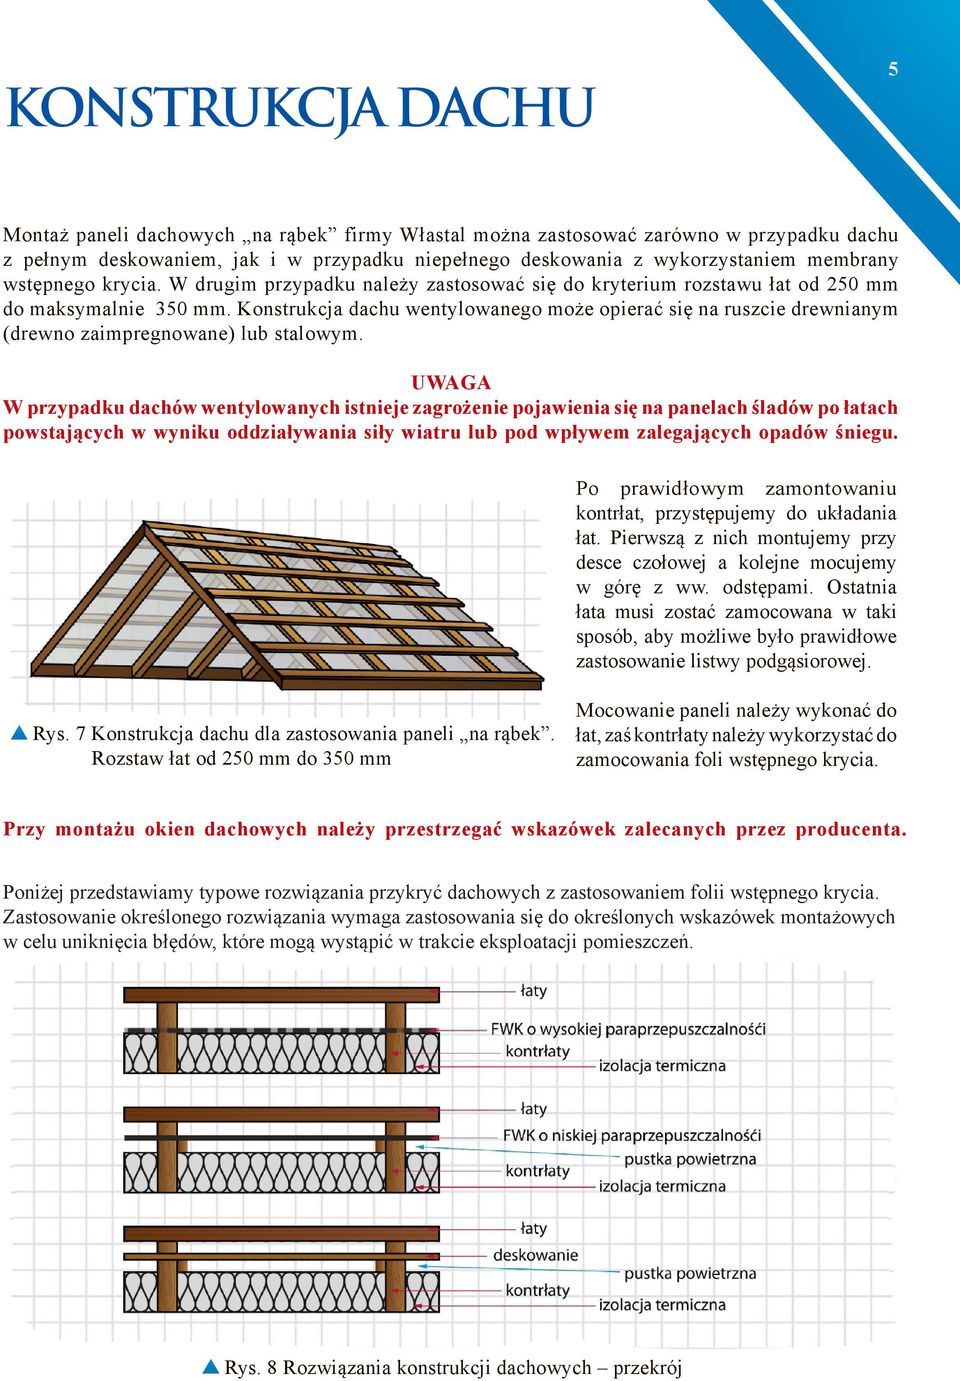 Konstrukcja dachu wentylowanego może opierać się na ruszcie drewnianym (drewno zaimpregnowane) lub stalowym.